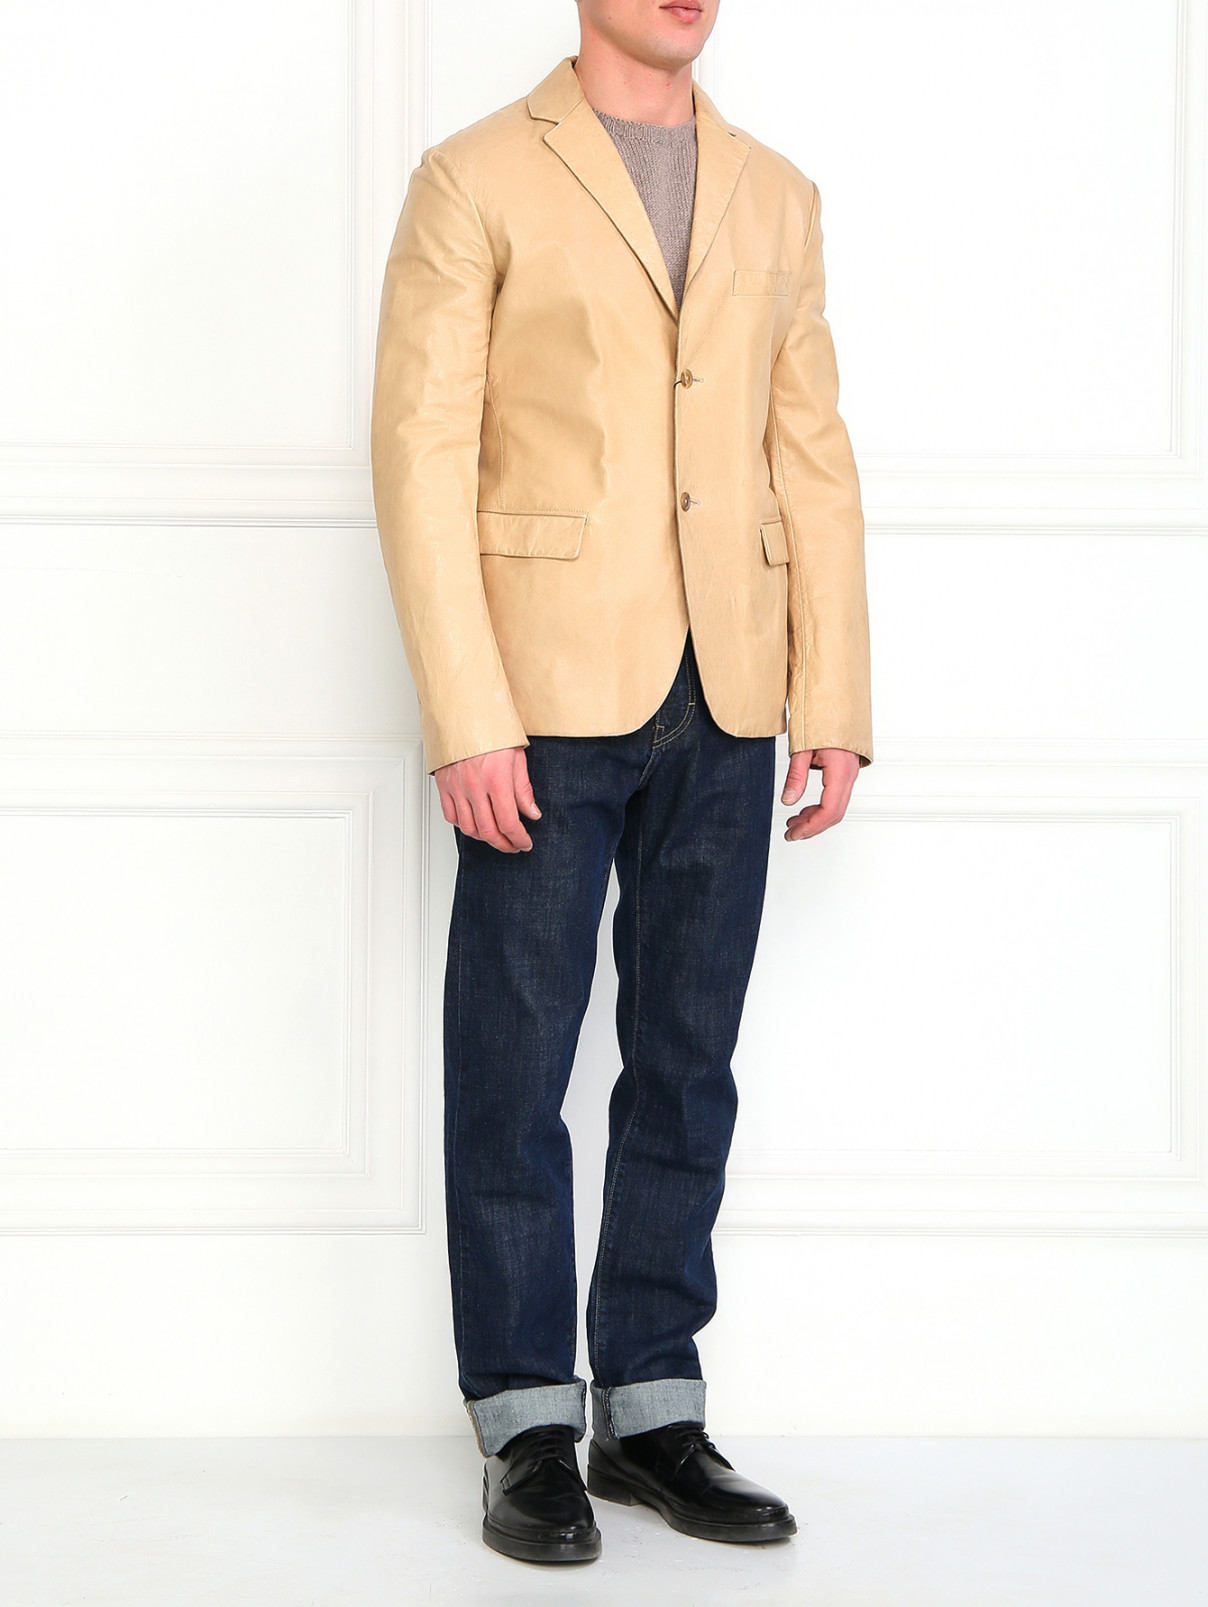 Куртка из кожи с нагрудным карманом Jil Sander  –  Модель Общий вид  – Цвет:  Коричневый